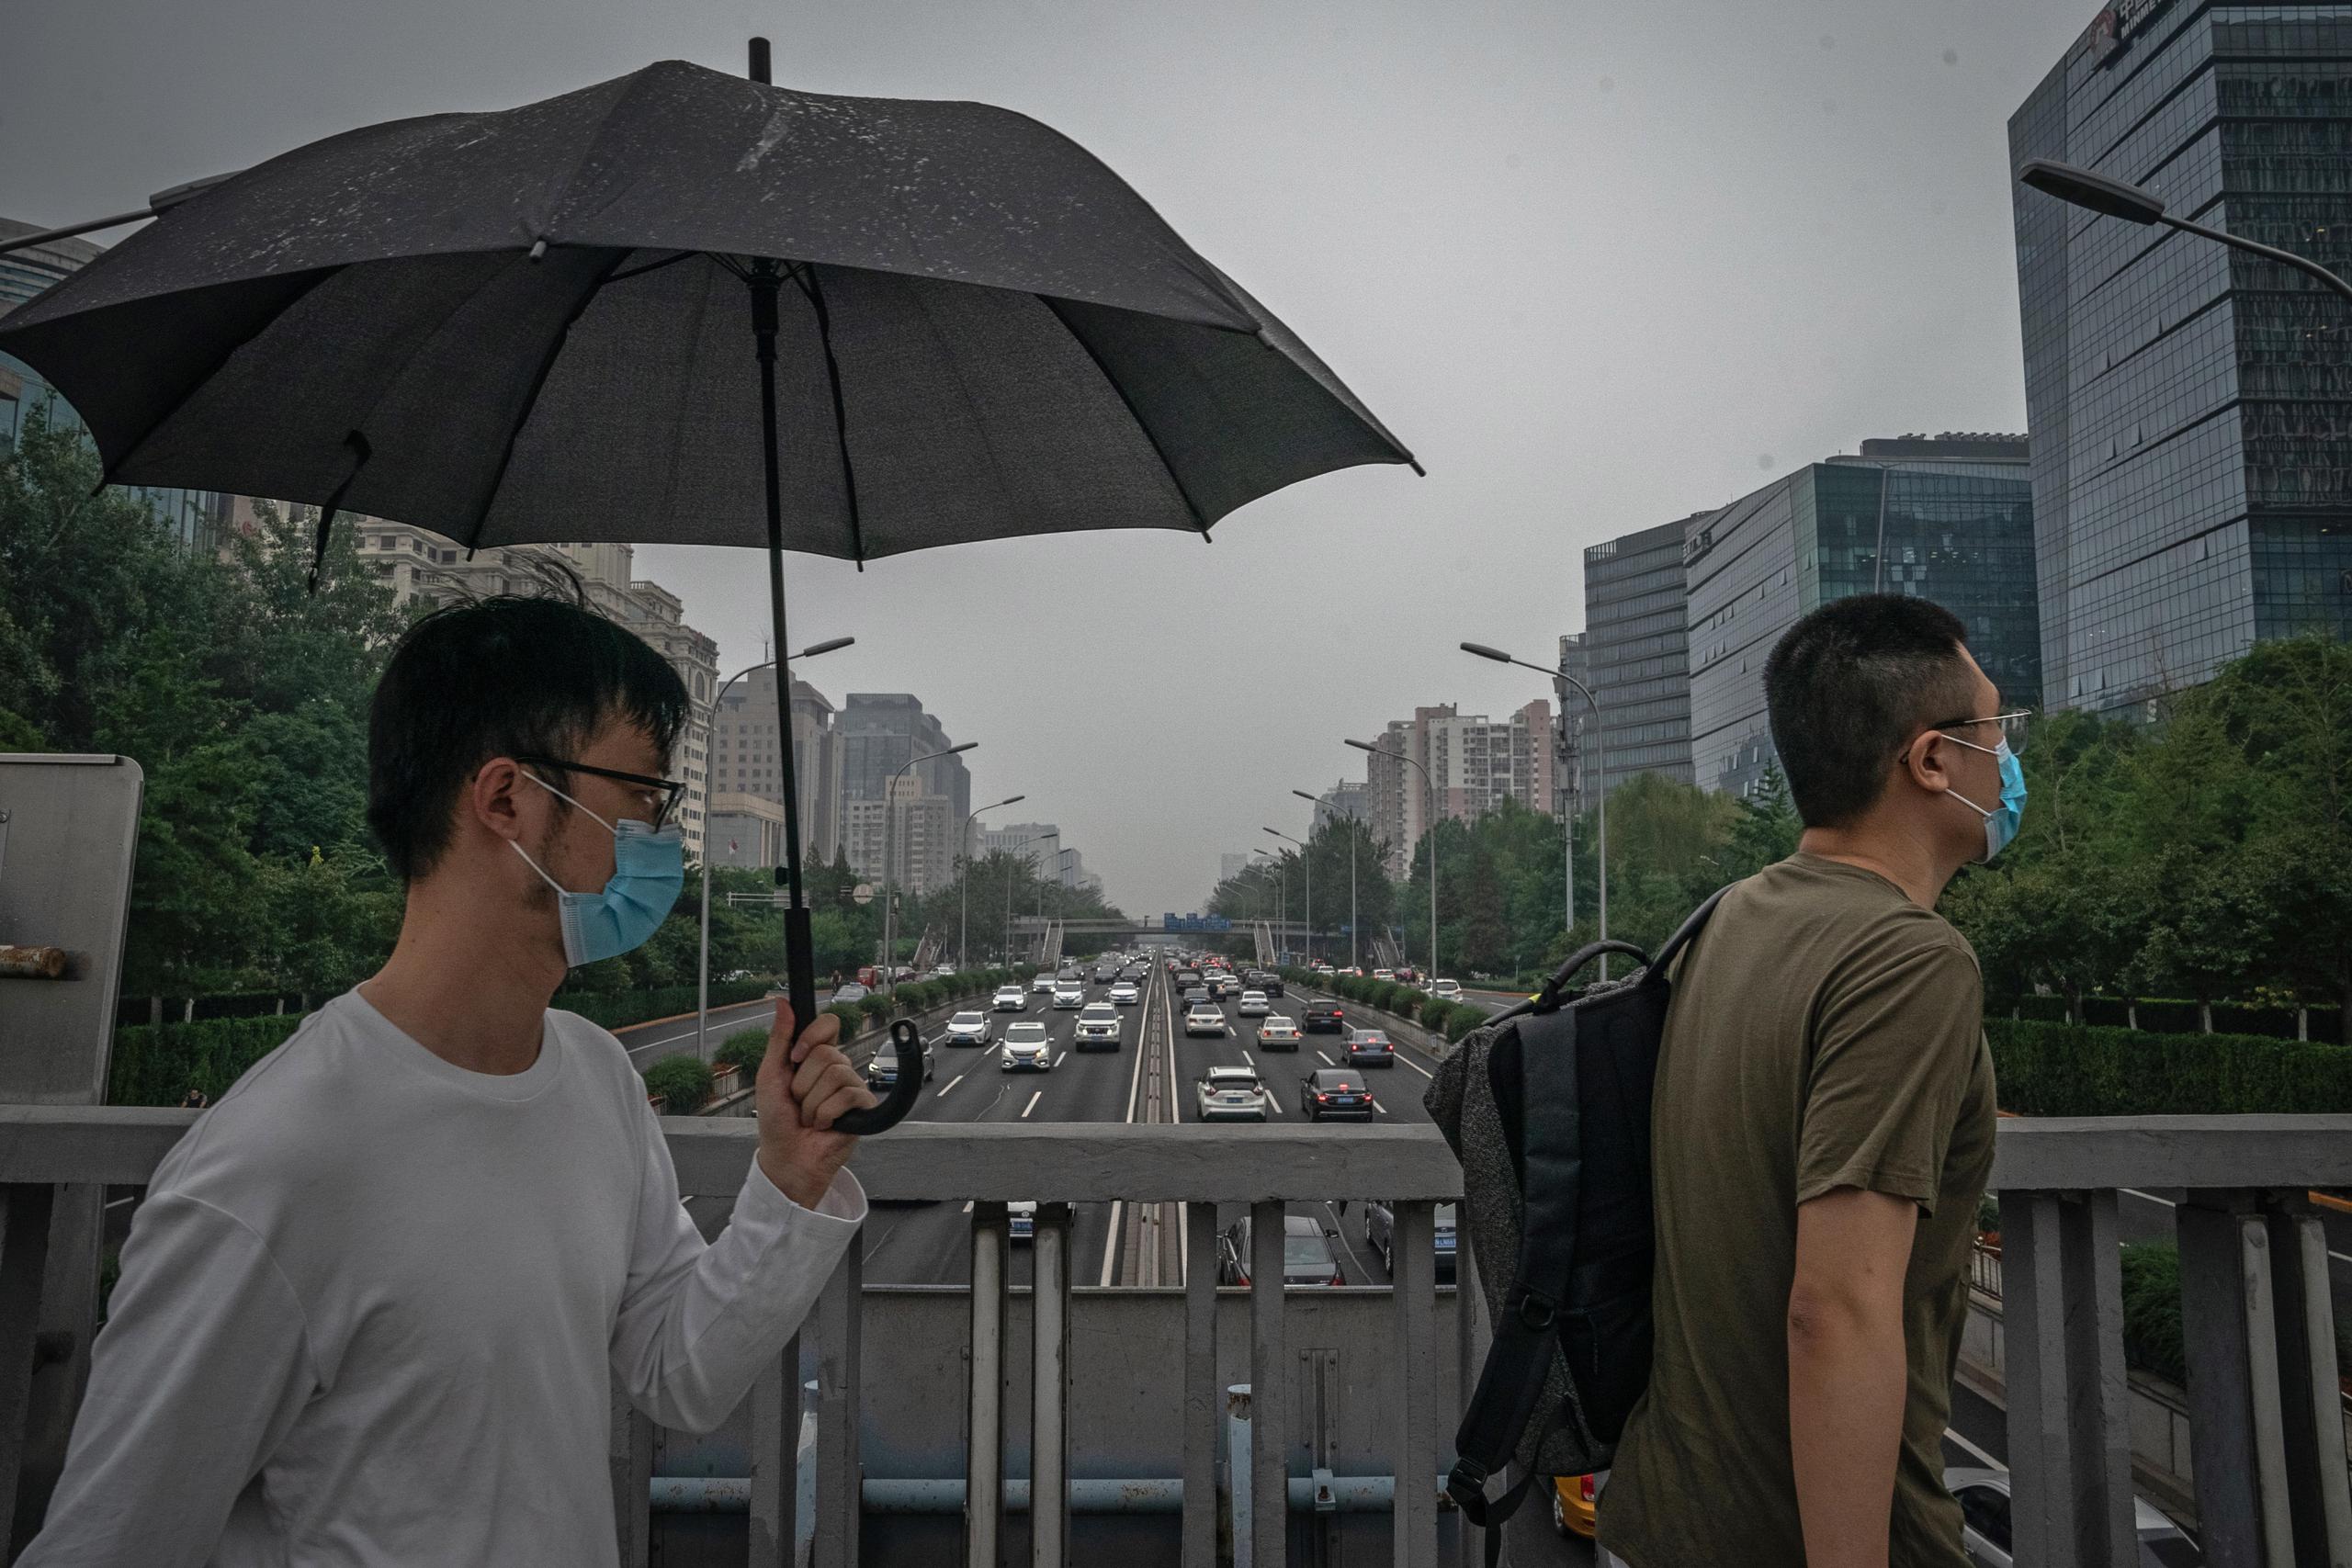 Un hombre camina con sombrilla en China, país azotado por fuertes lluvias en algunas regiones.